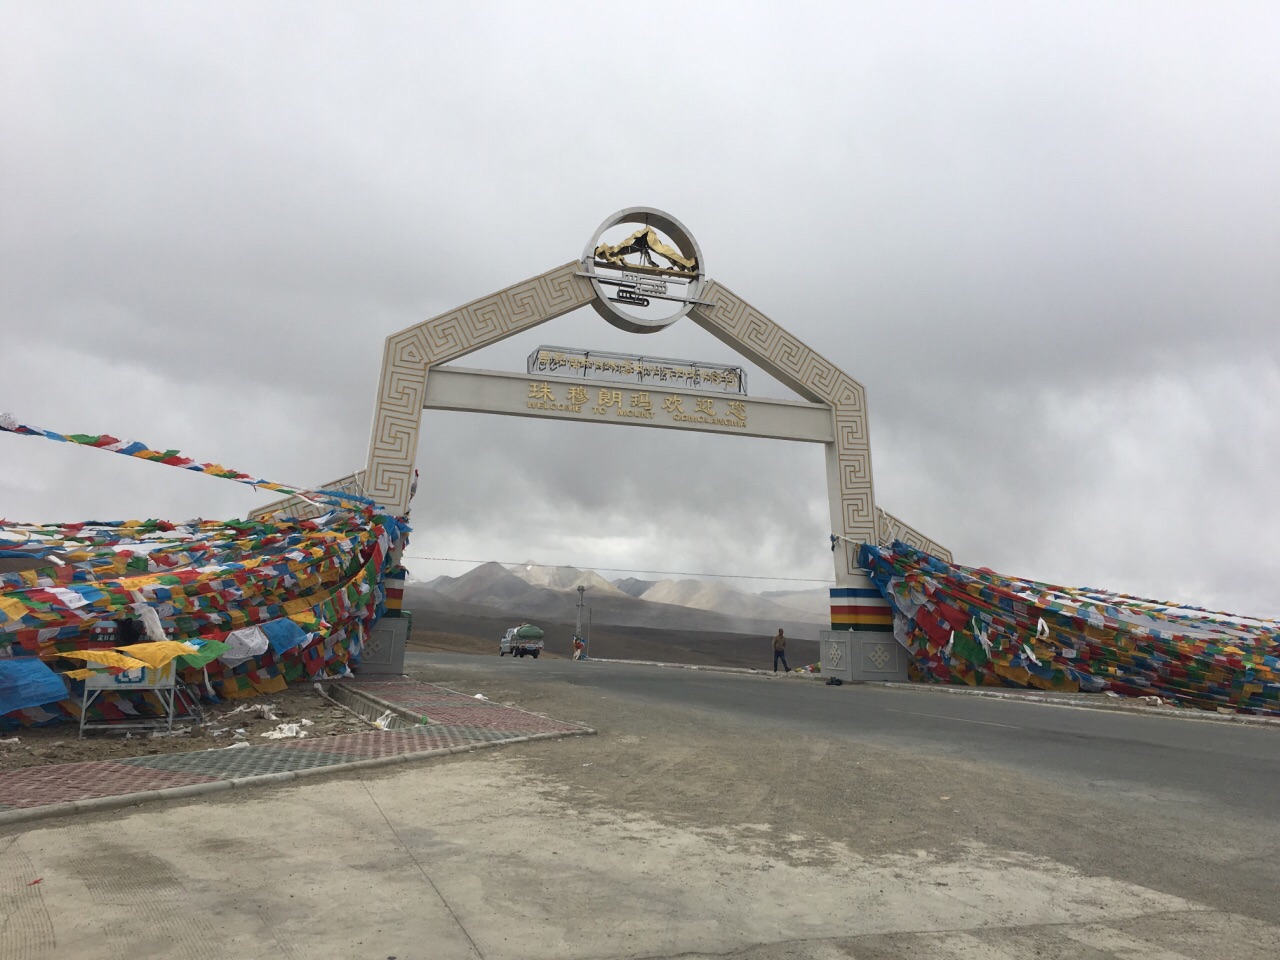 加措拉山口是从日喀则前往珠峰大本营路过的一个山口。